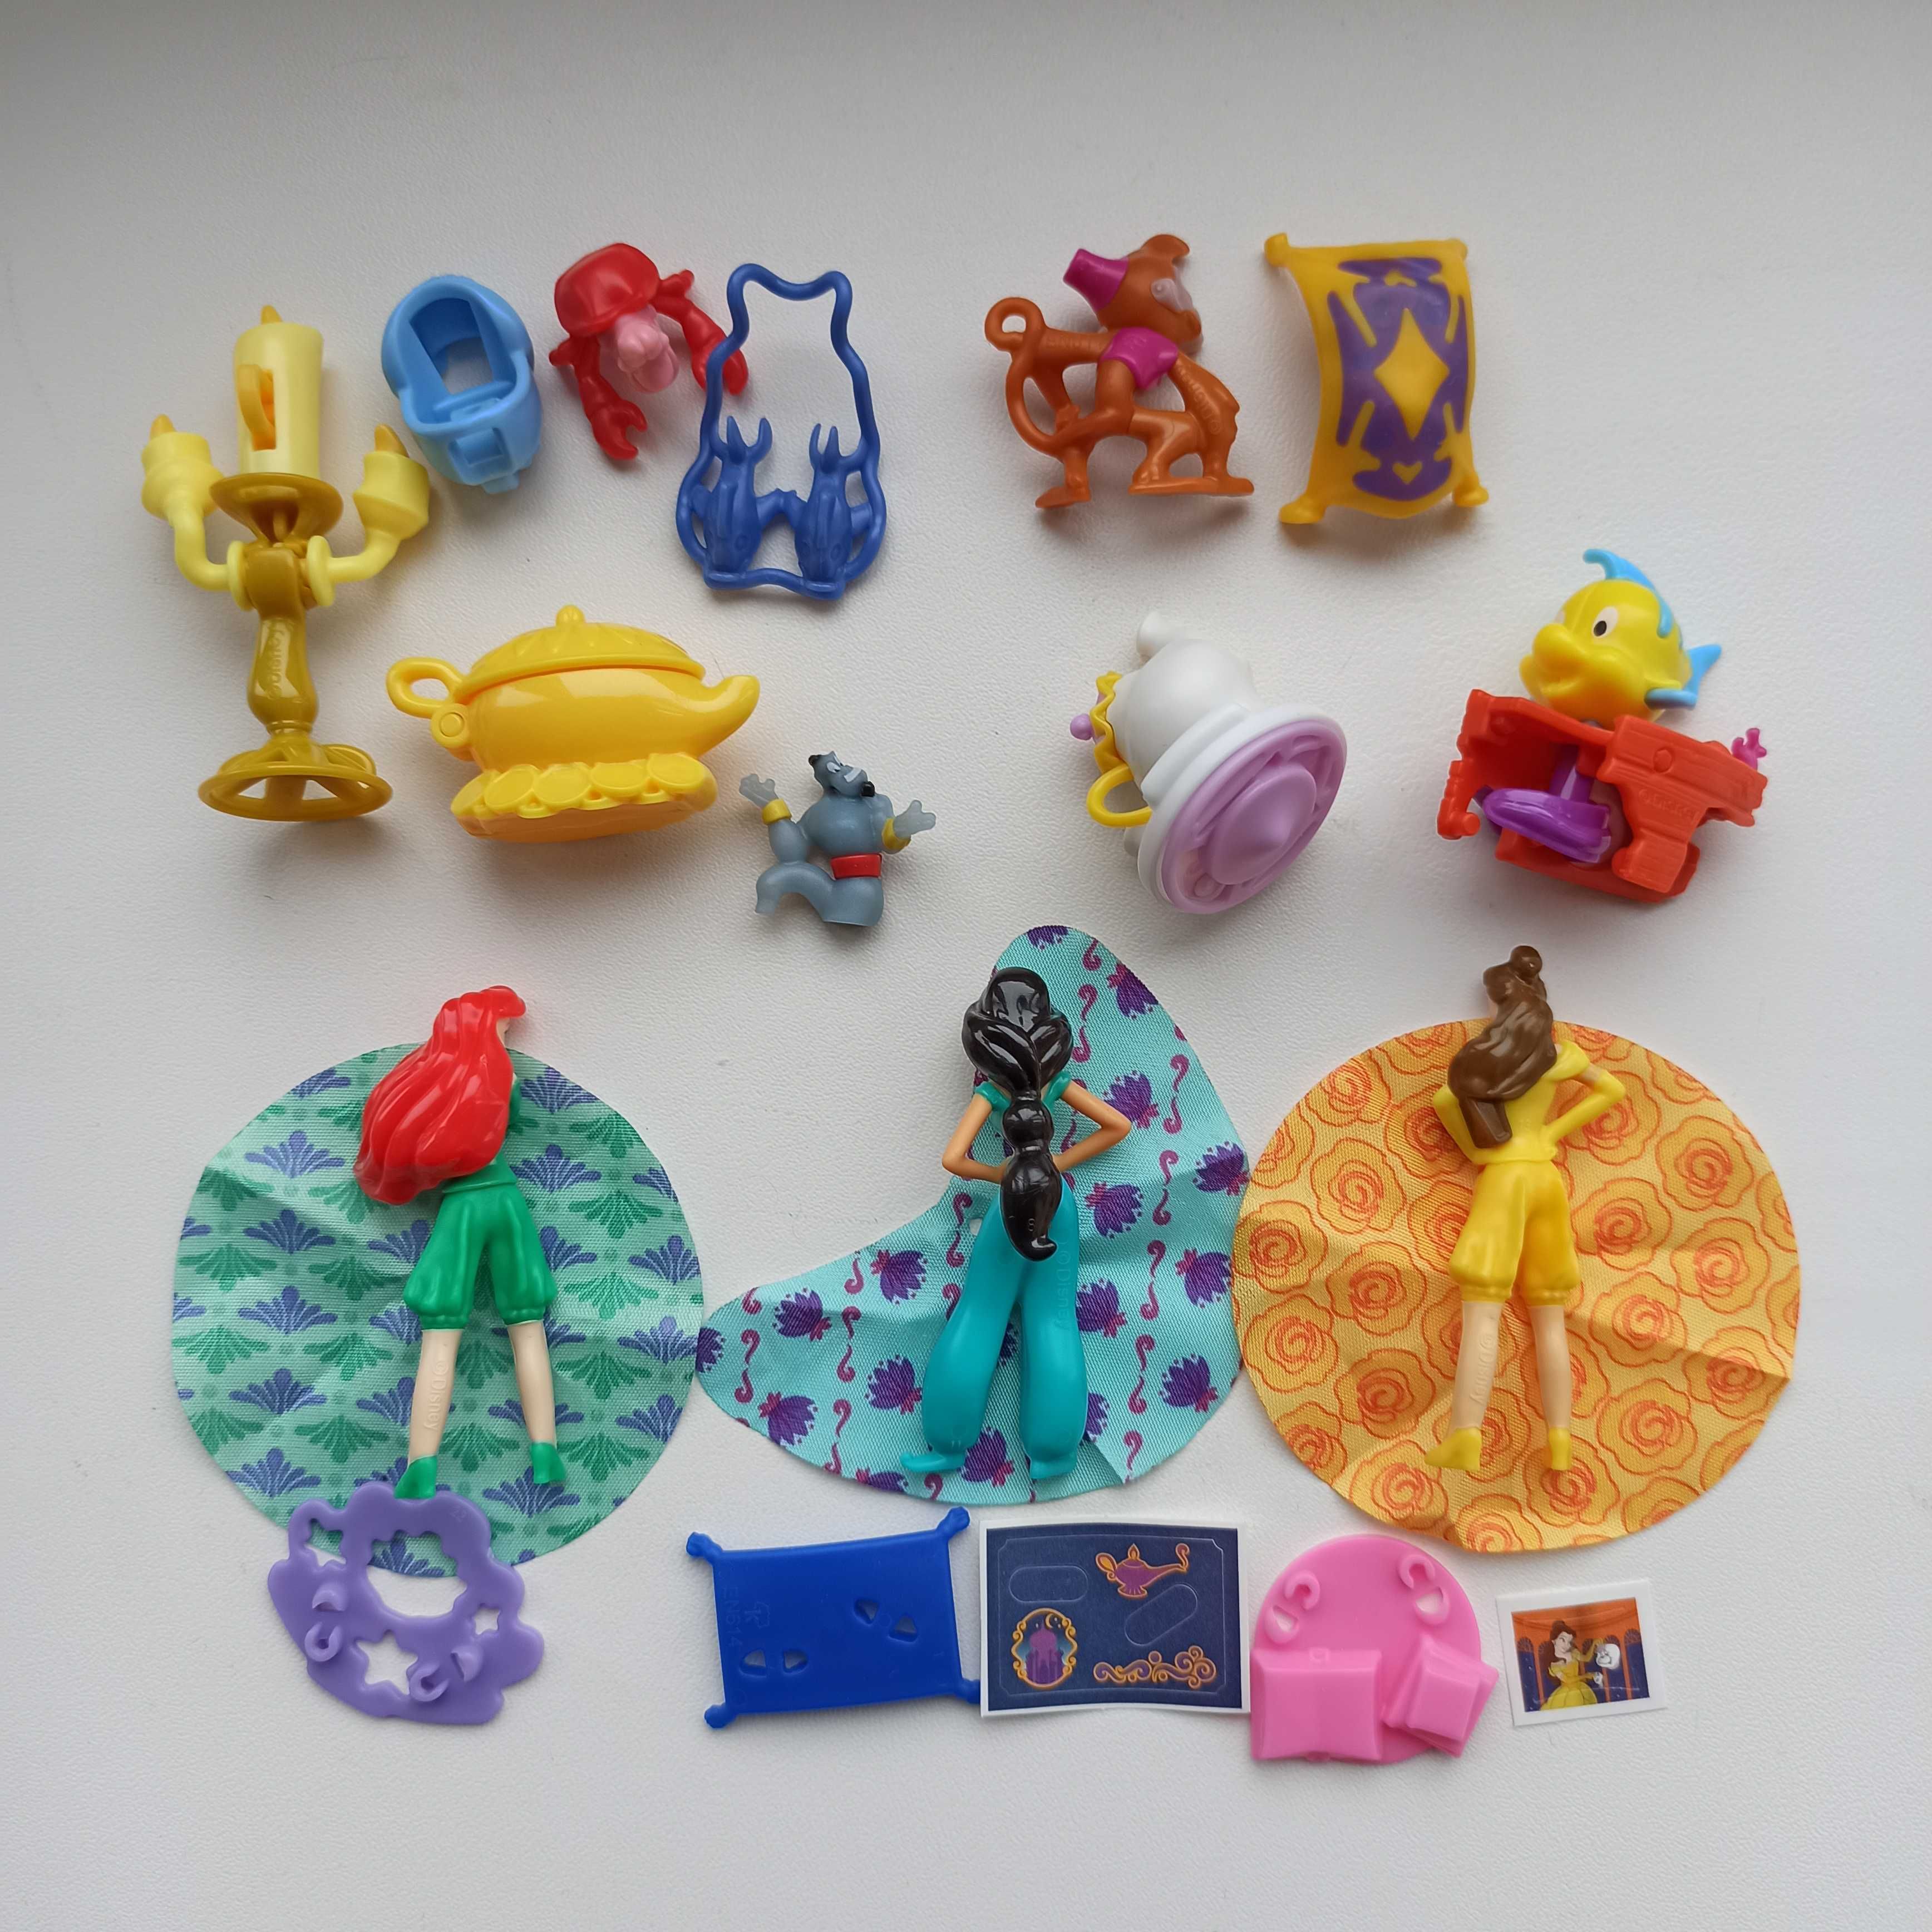 Колекція фігурок Кіндер Принцеси Дісней, 2020, Kinder Disney Princess